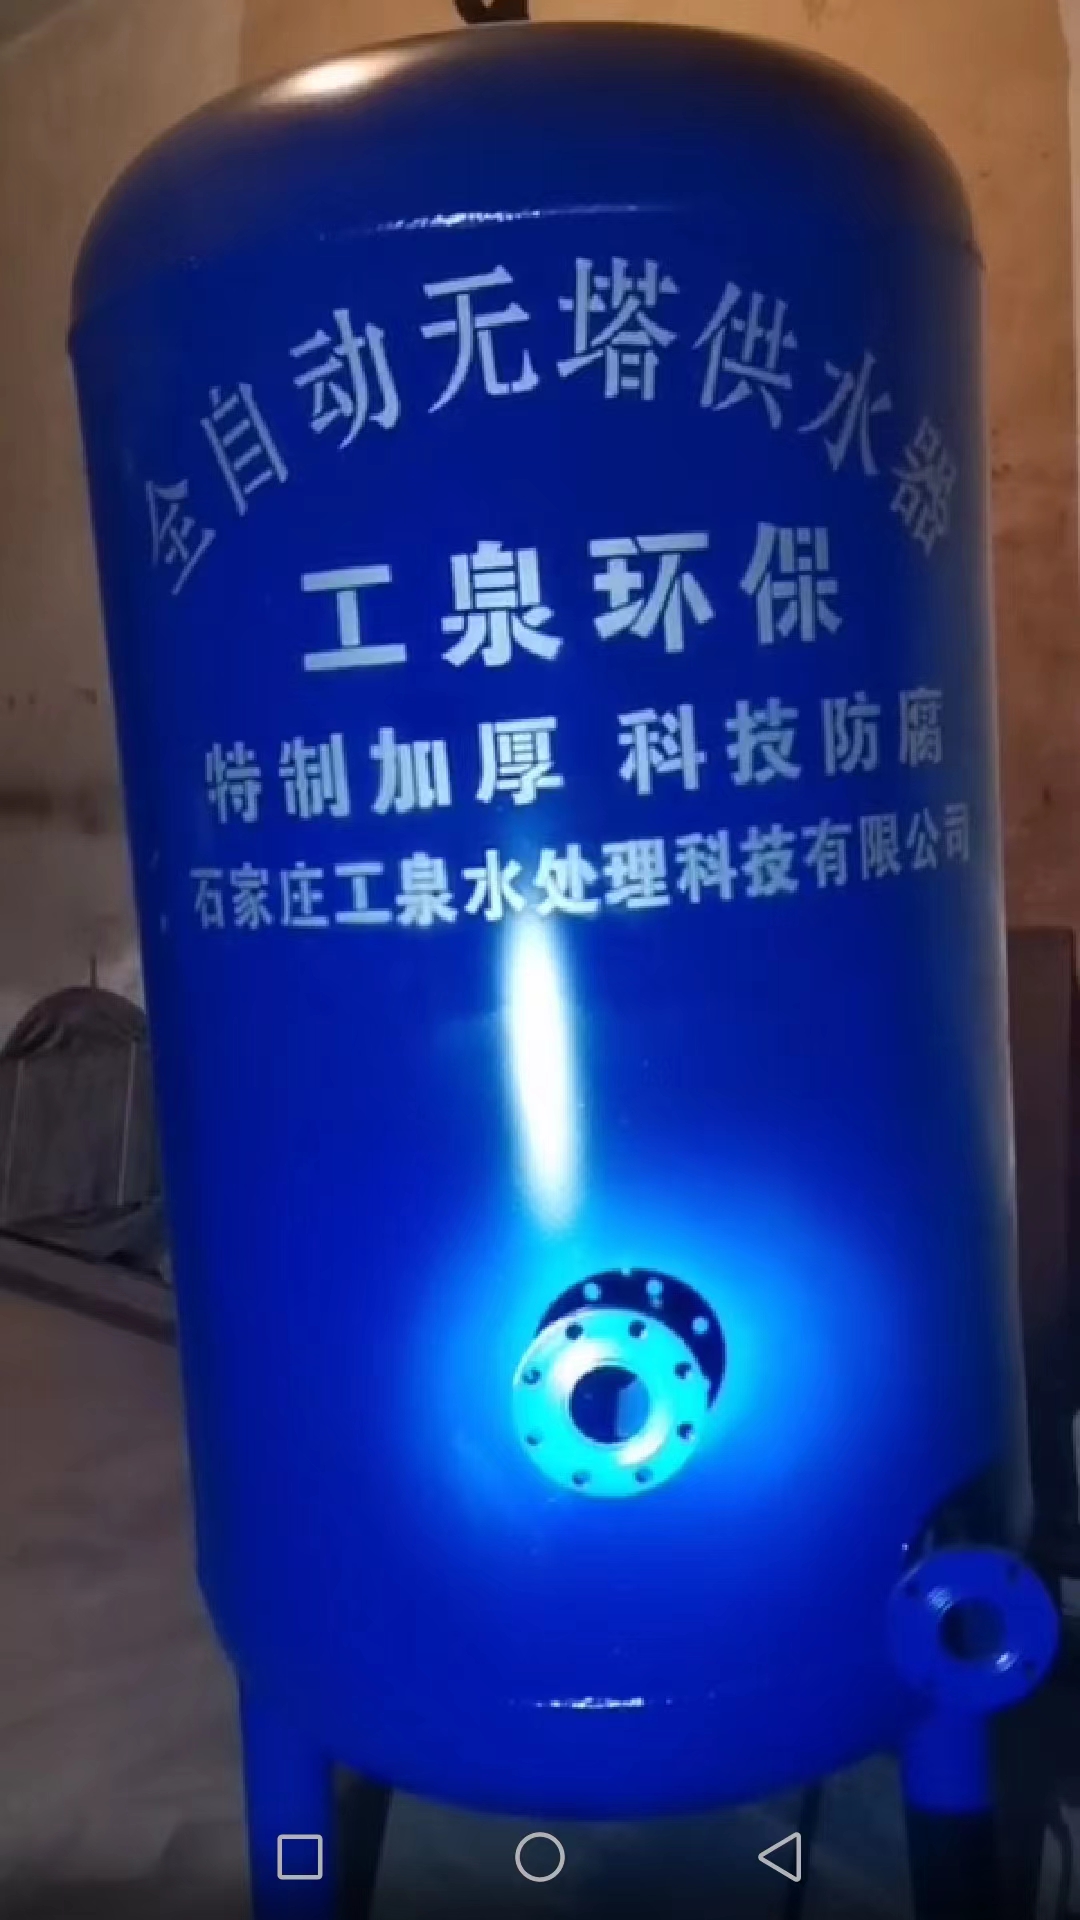 无塔供水设备应用到石家庄新华区秀水消防救援中心